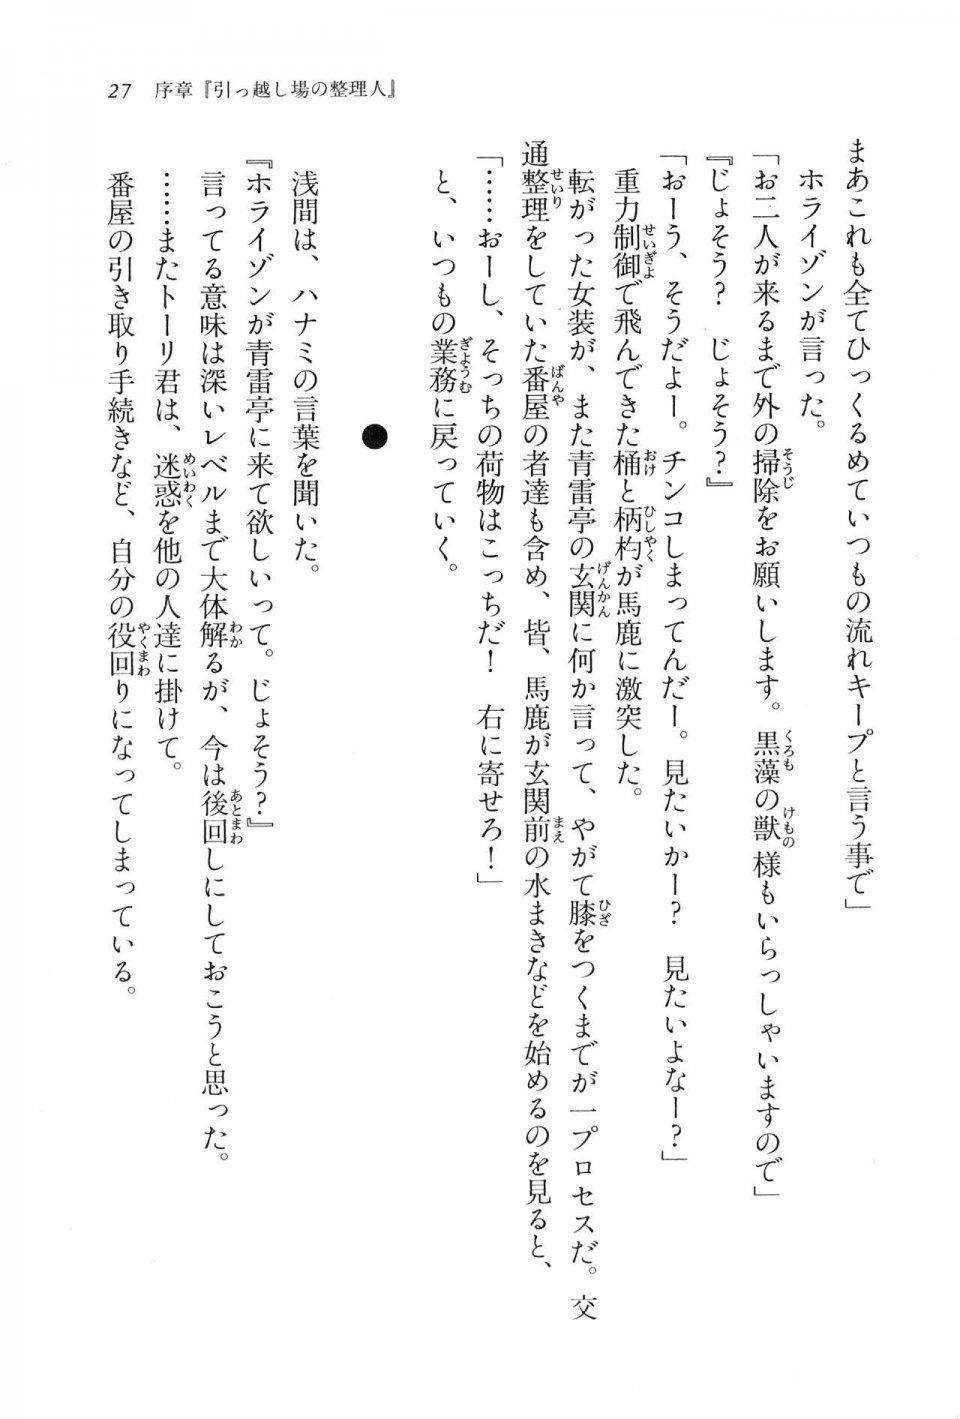 Kyoukai Senjou no Horizon LN Vol 11(5A) - Photo #28